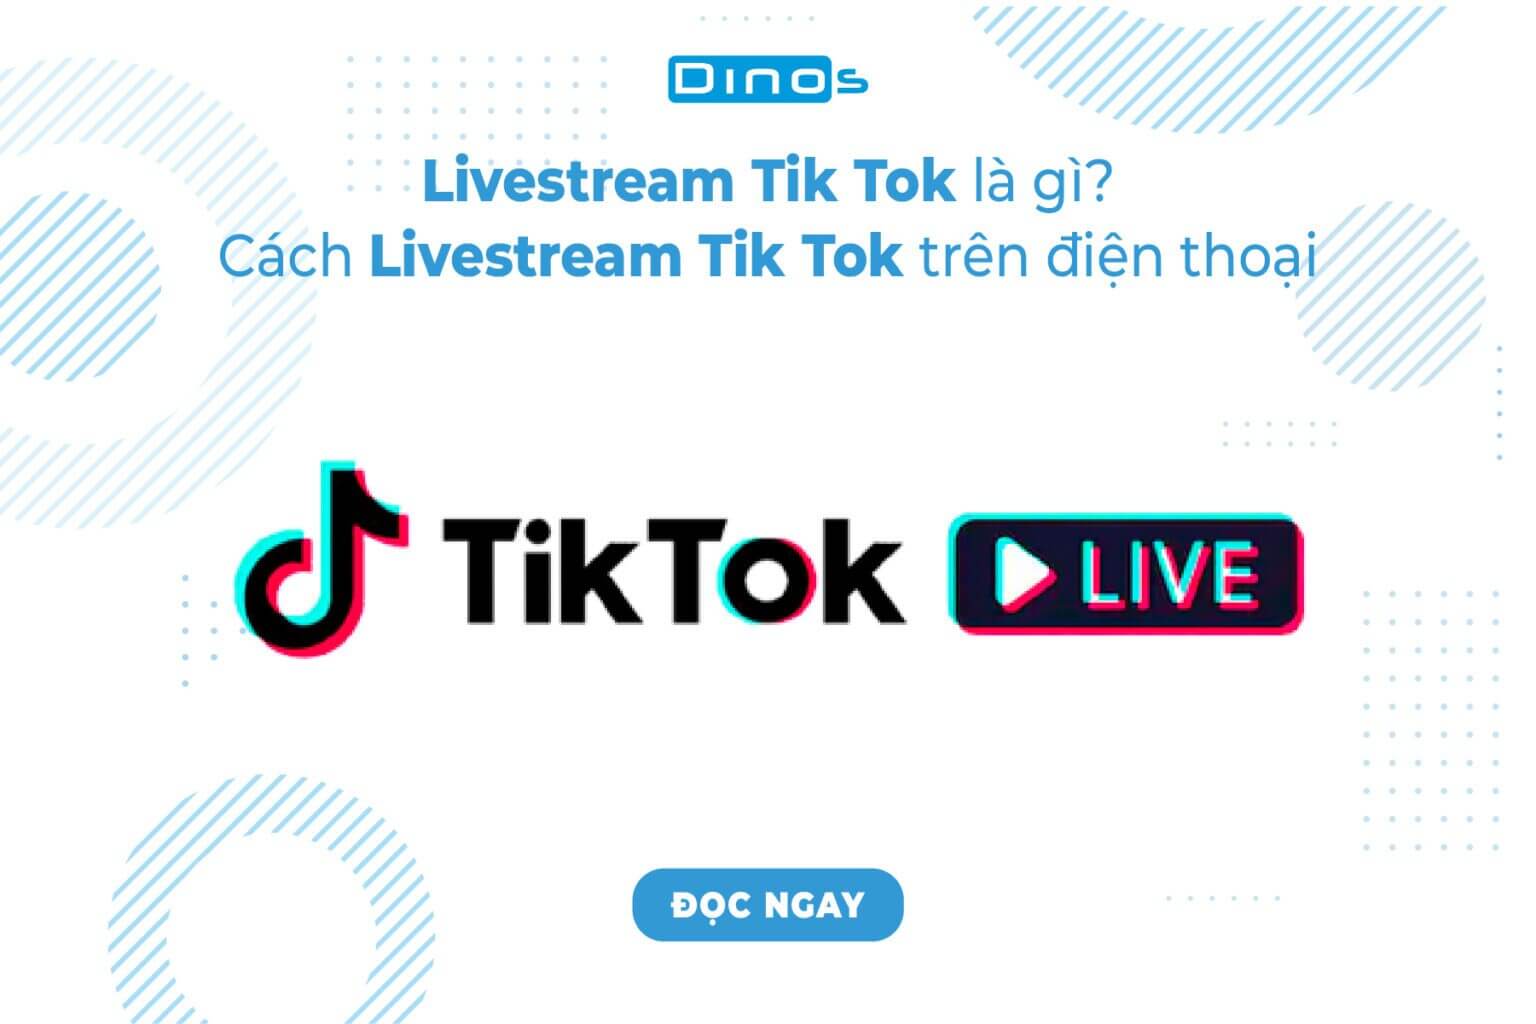 Livestream Tik Tok là gì? Cách livestream Tik Tok trên điện thoại